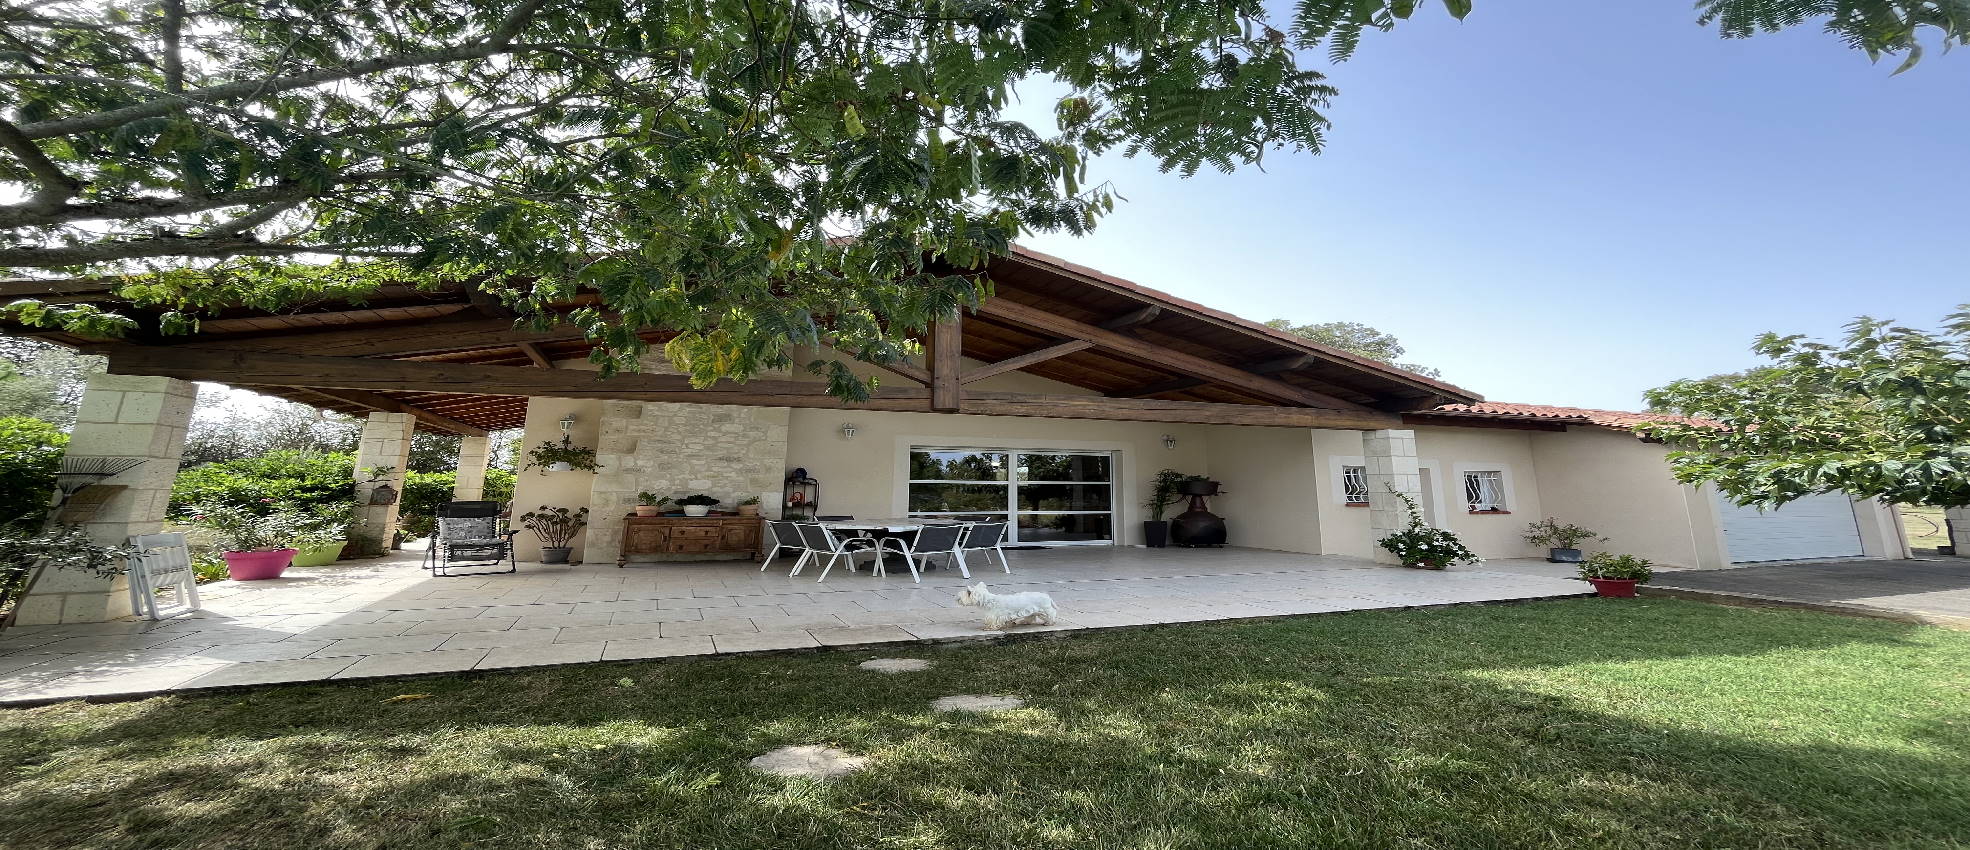 Villa plain-pied 165m² – T6 – Piscine – Garage – Jardin